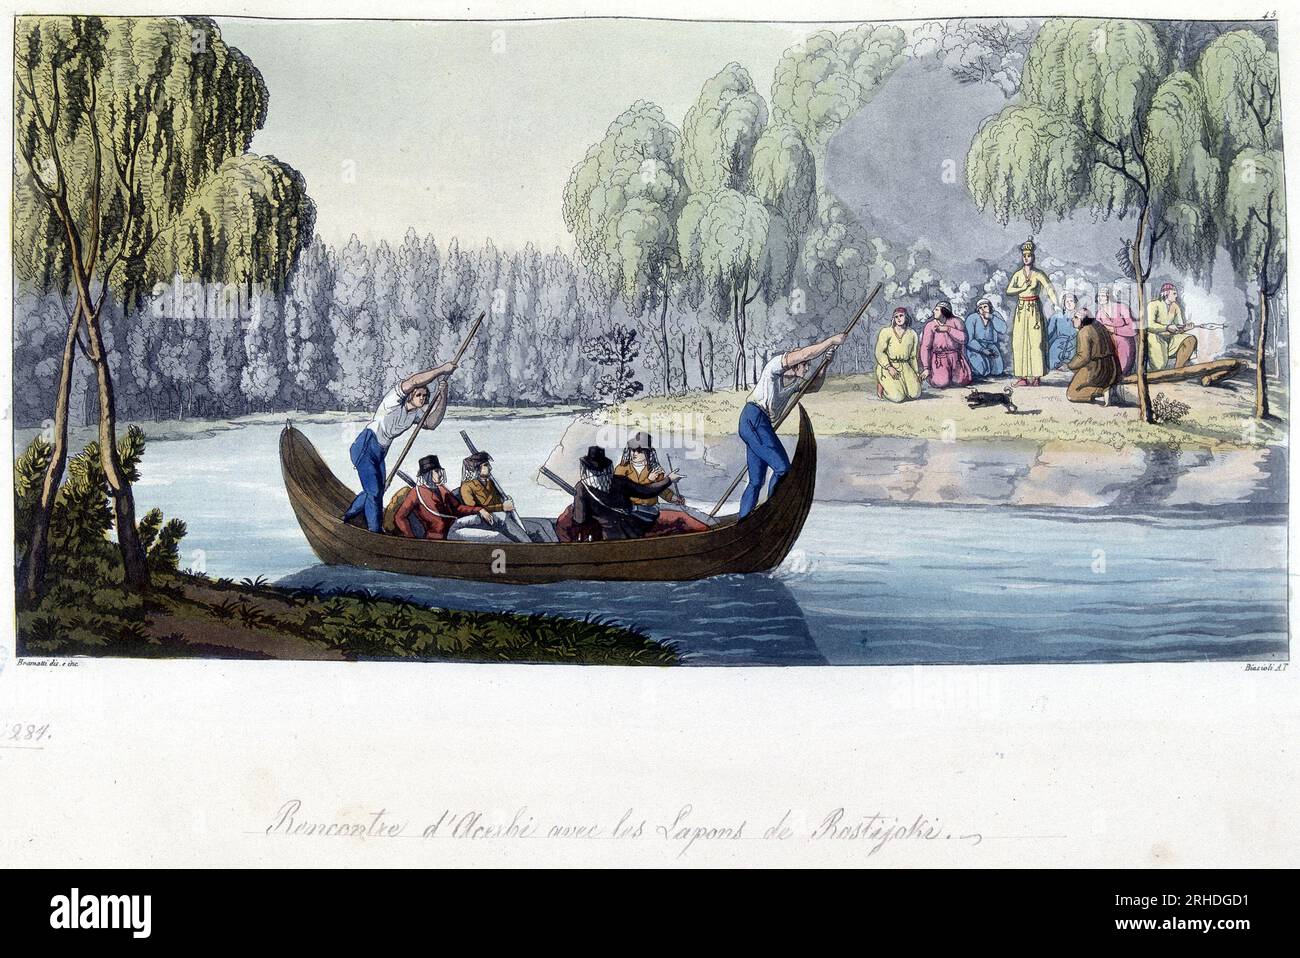 Rencontre d'Acerbi avec les lapons de Rostijoki, Norvege - dans 'le costume ancien et moderne' par Jules Ferrario, 1819-1820 Banque D'Images